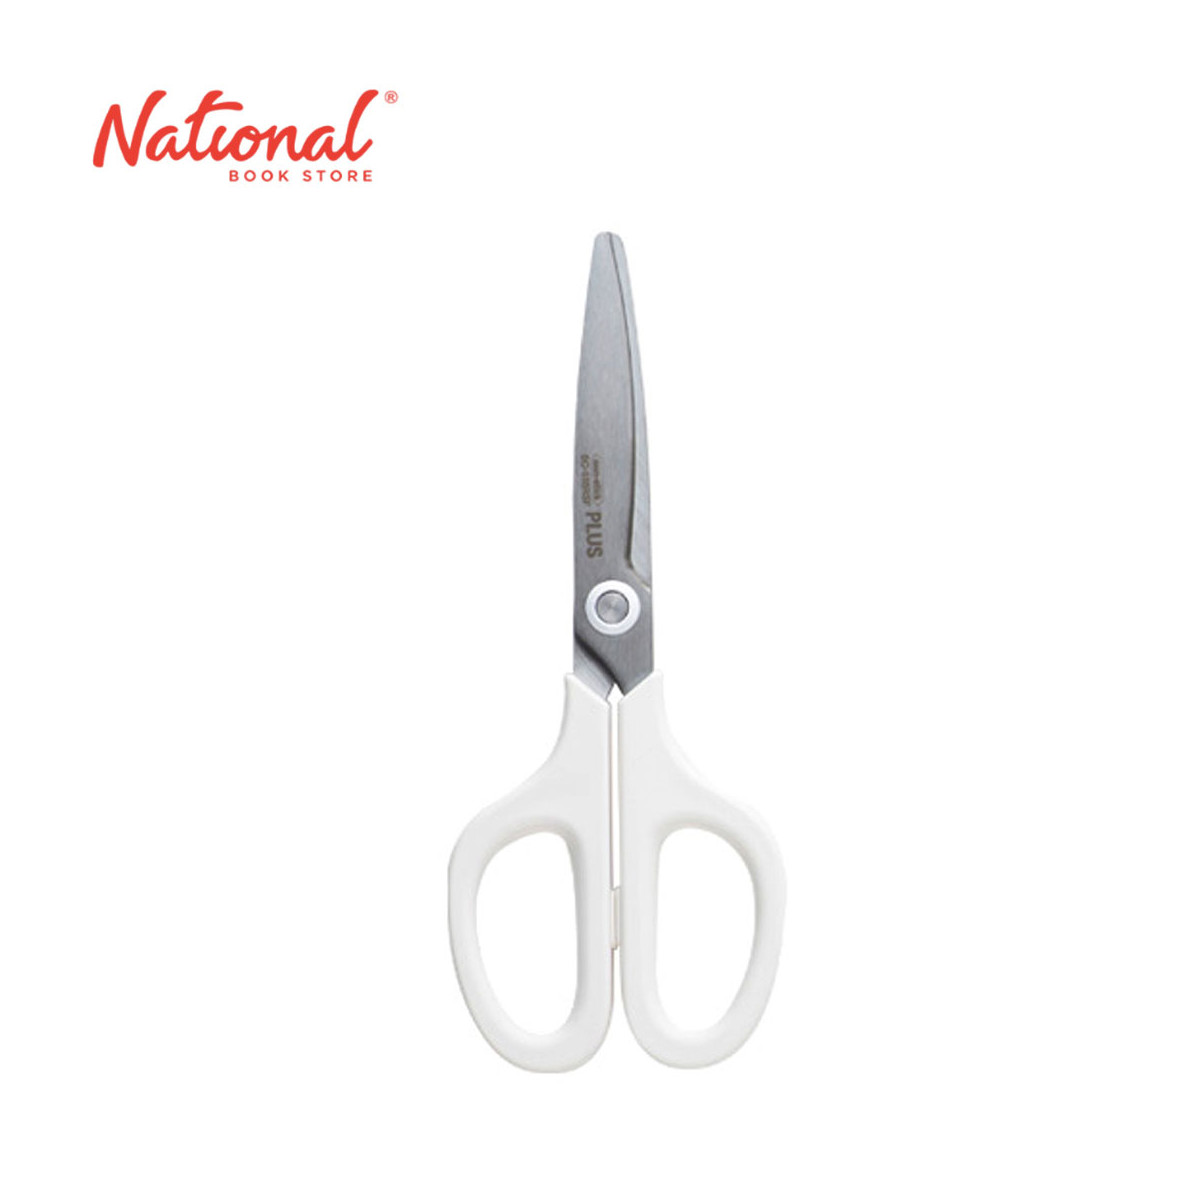 Plus Multi-Purpose Scissors Fit Curve Pastel White 6 inches SC 155 - School Supplies